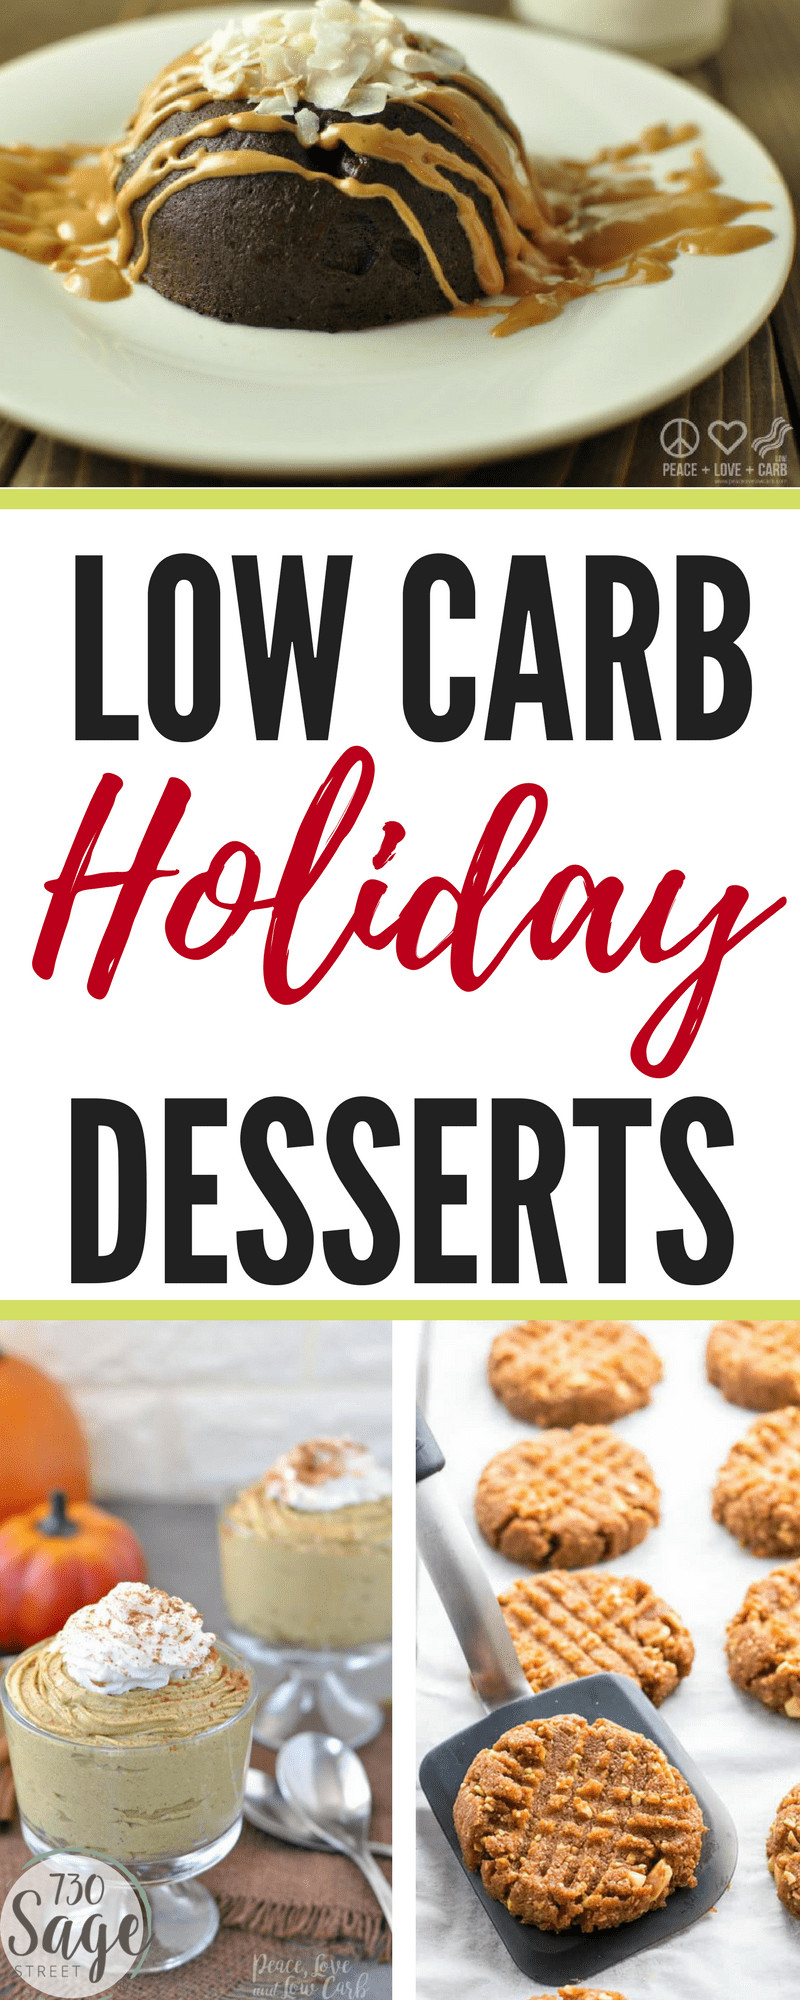 Low Carb Holiday Desserts
 Low Carb Holiday Desserts – 15 Delicious Recipes